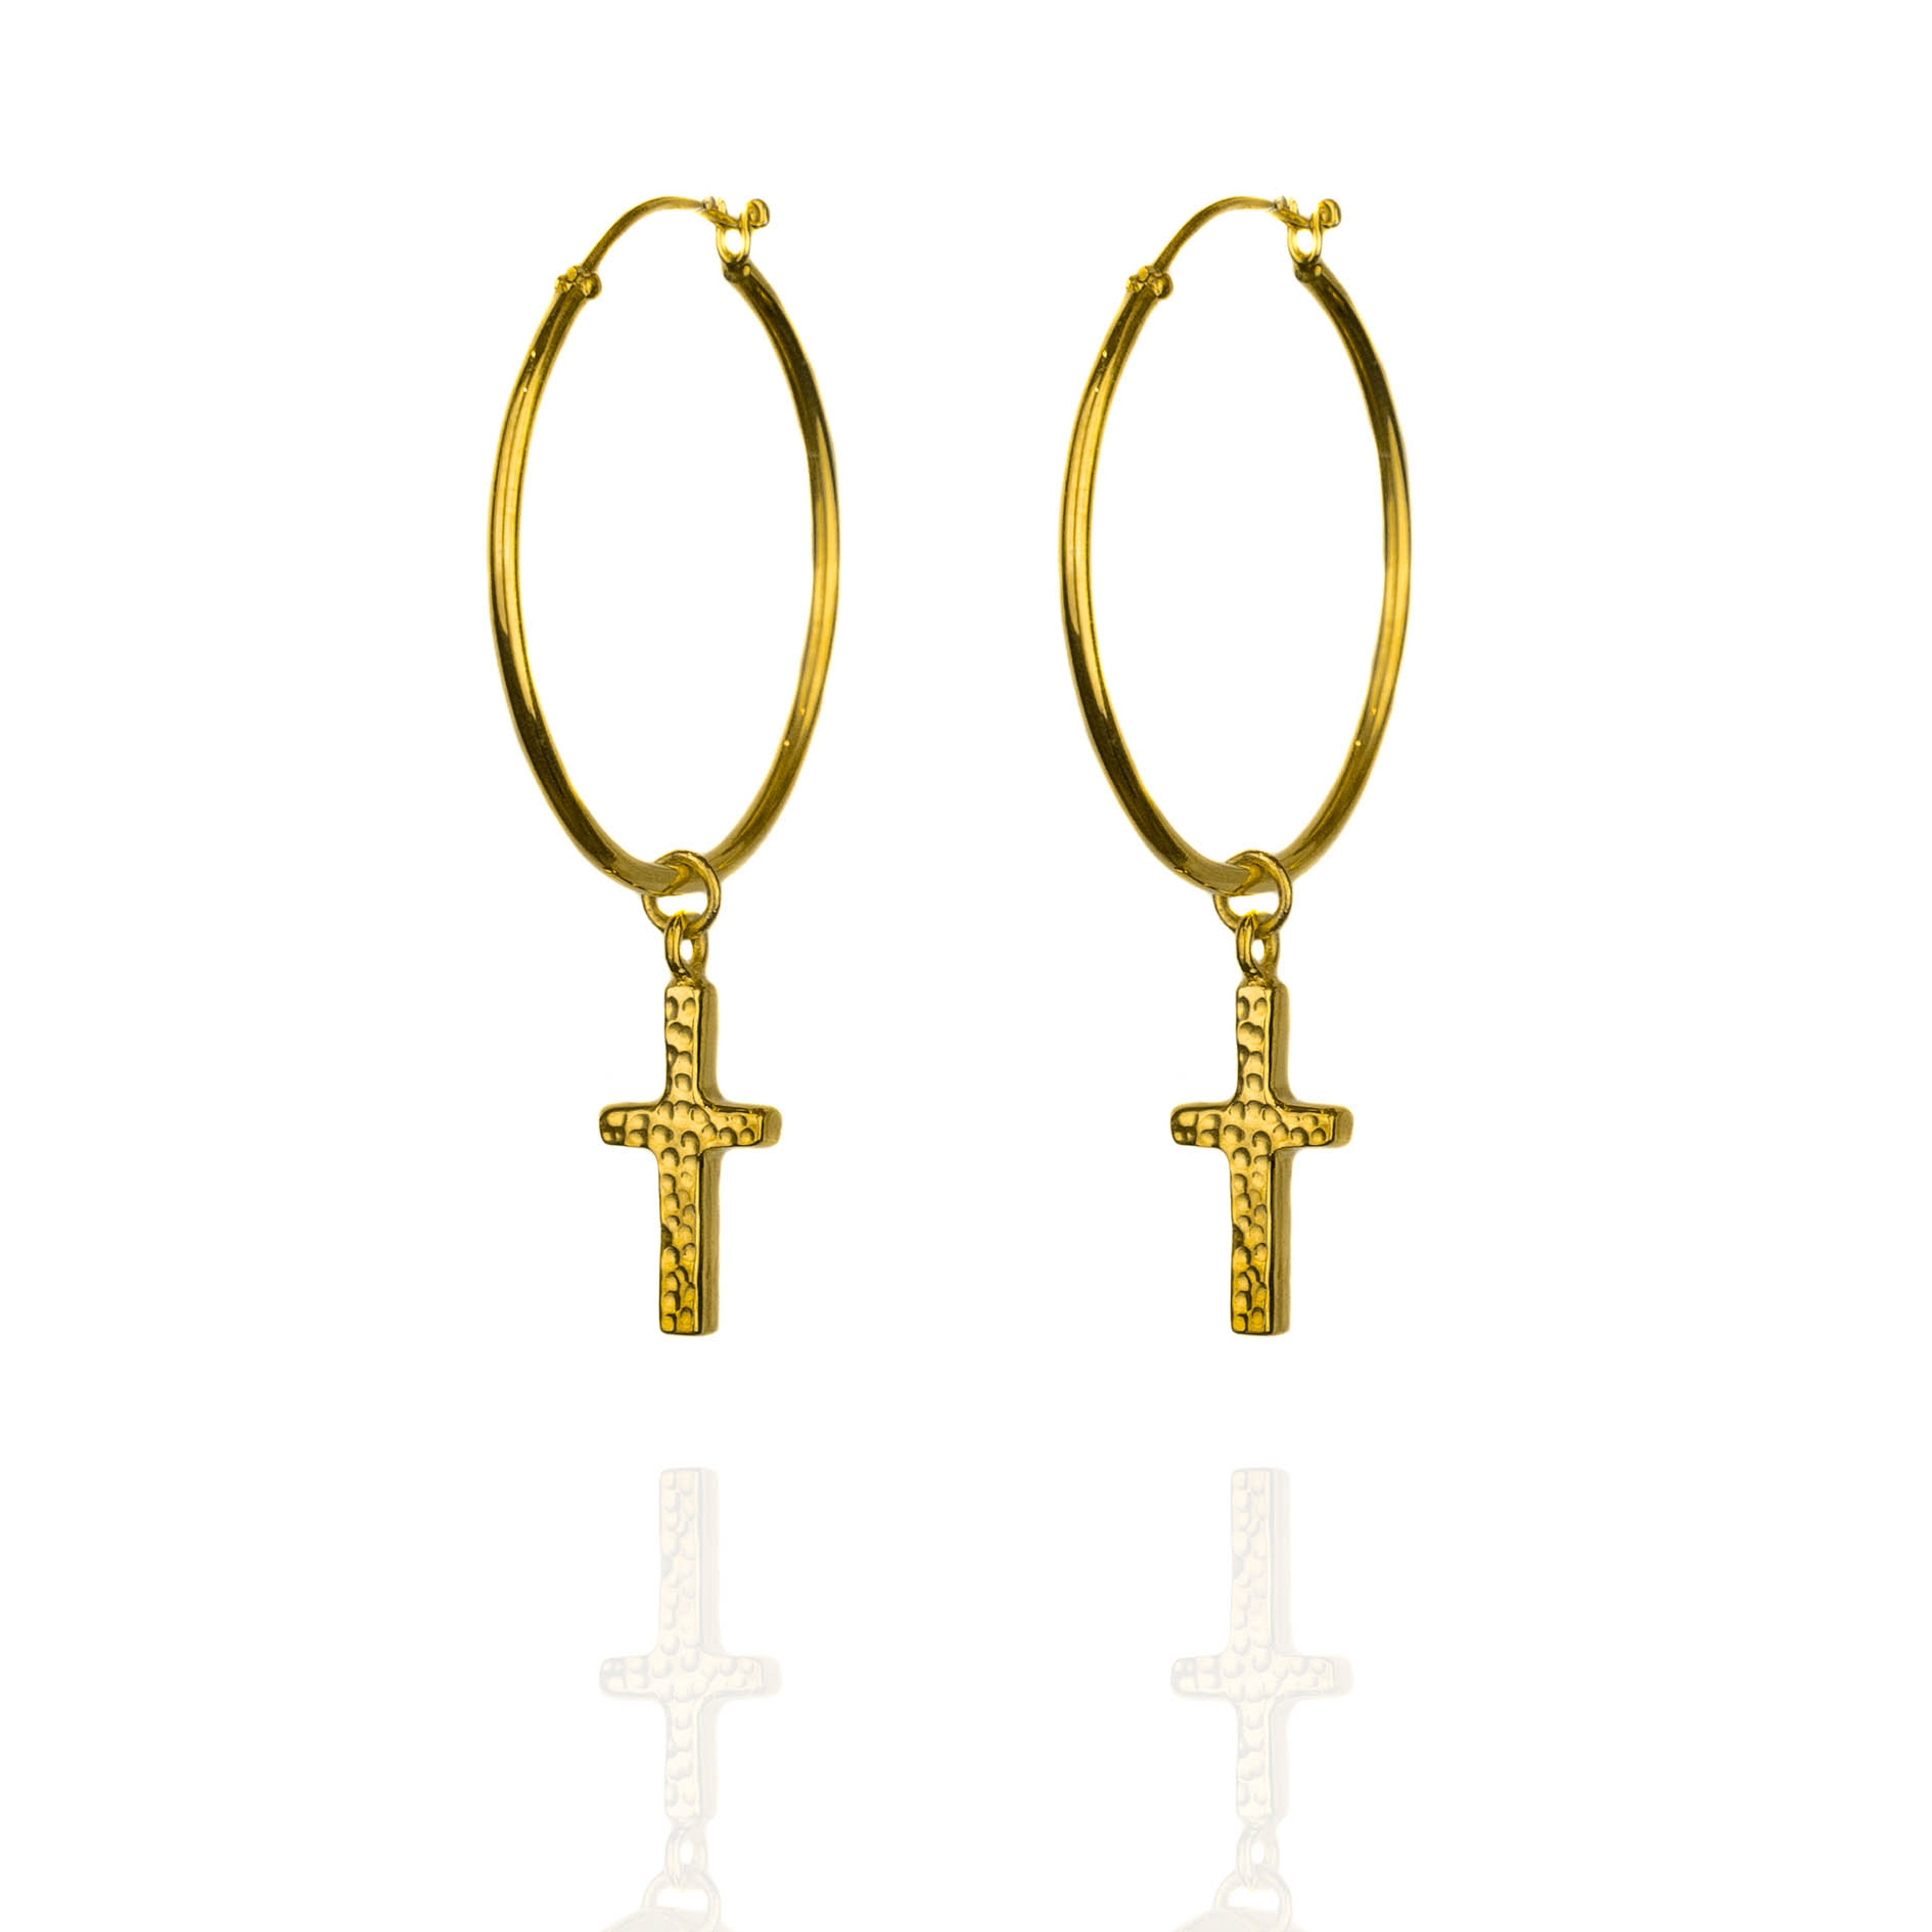 Gold hoop earrings with cross